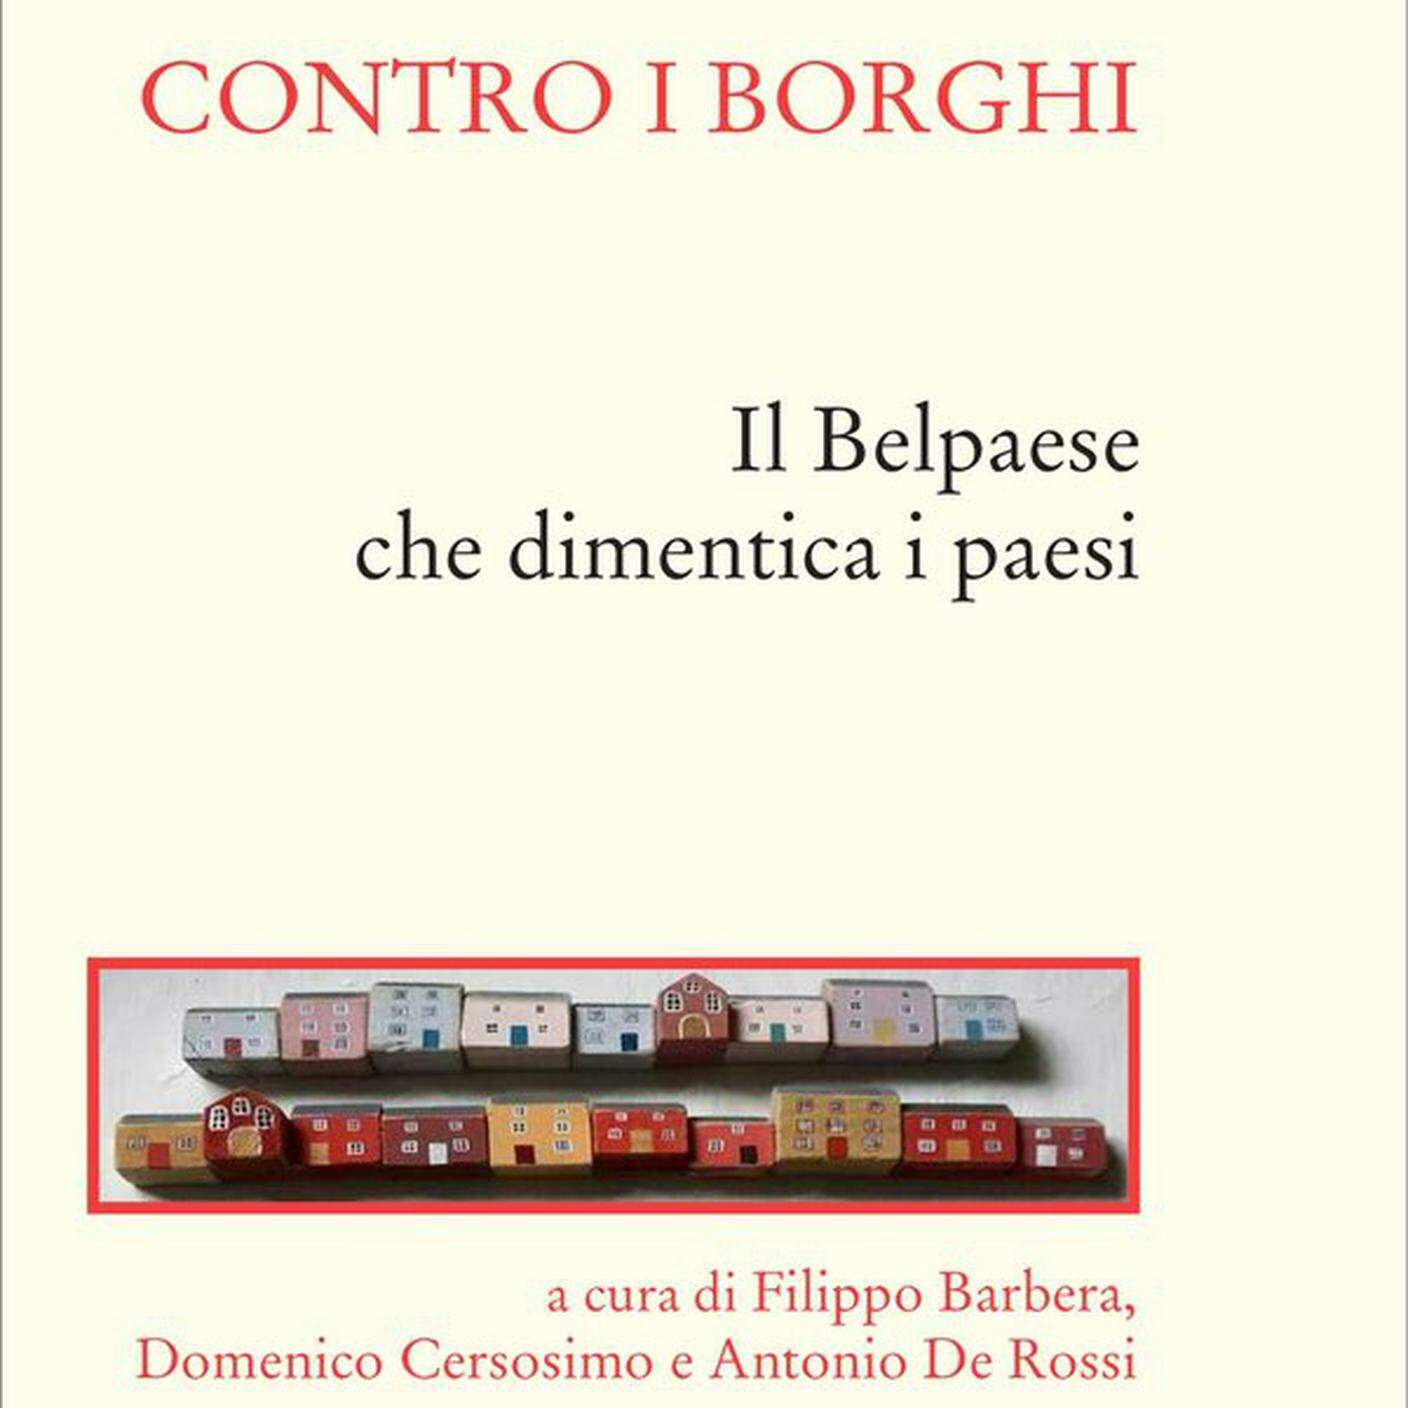 "Contro i borghi. Il Belpaese che dimentica i paesi" di Domenico Cersosimo e Antonio De Rossi, Donzelli Editore (dettaglio di copertina)